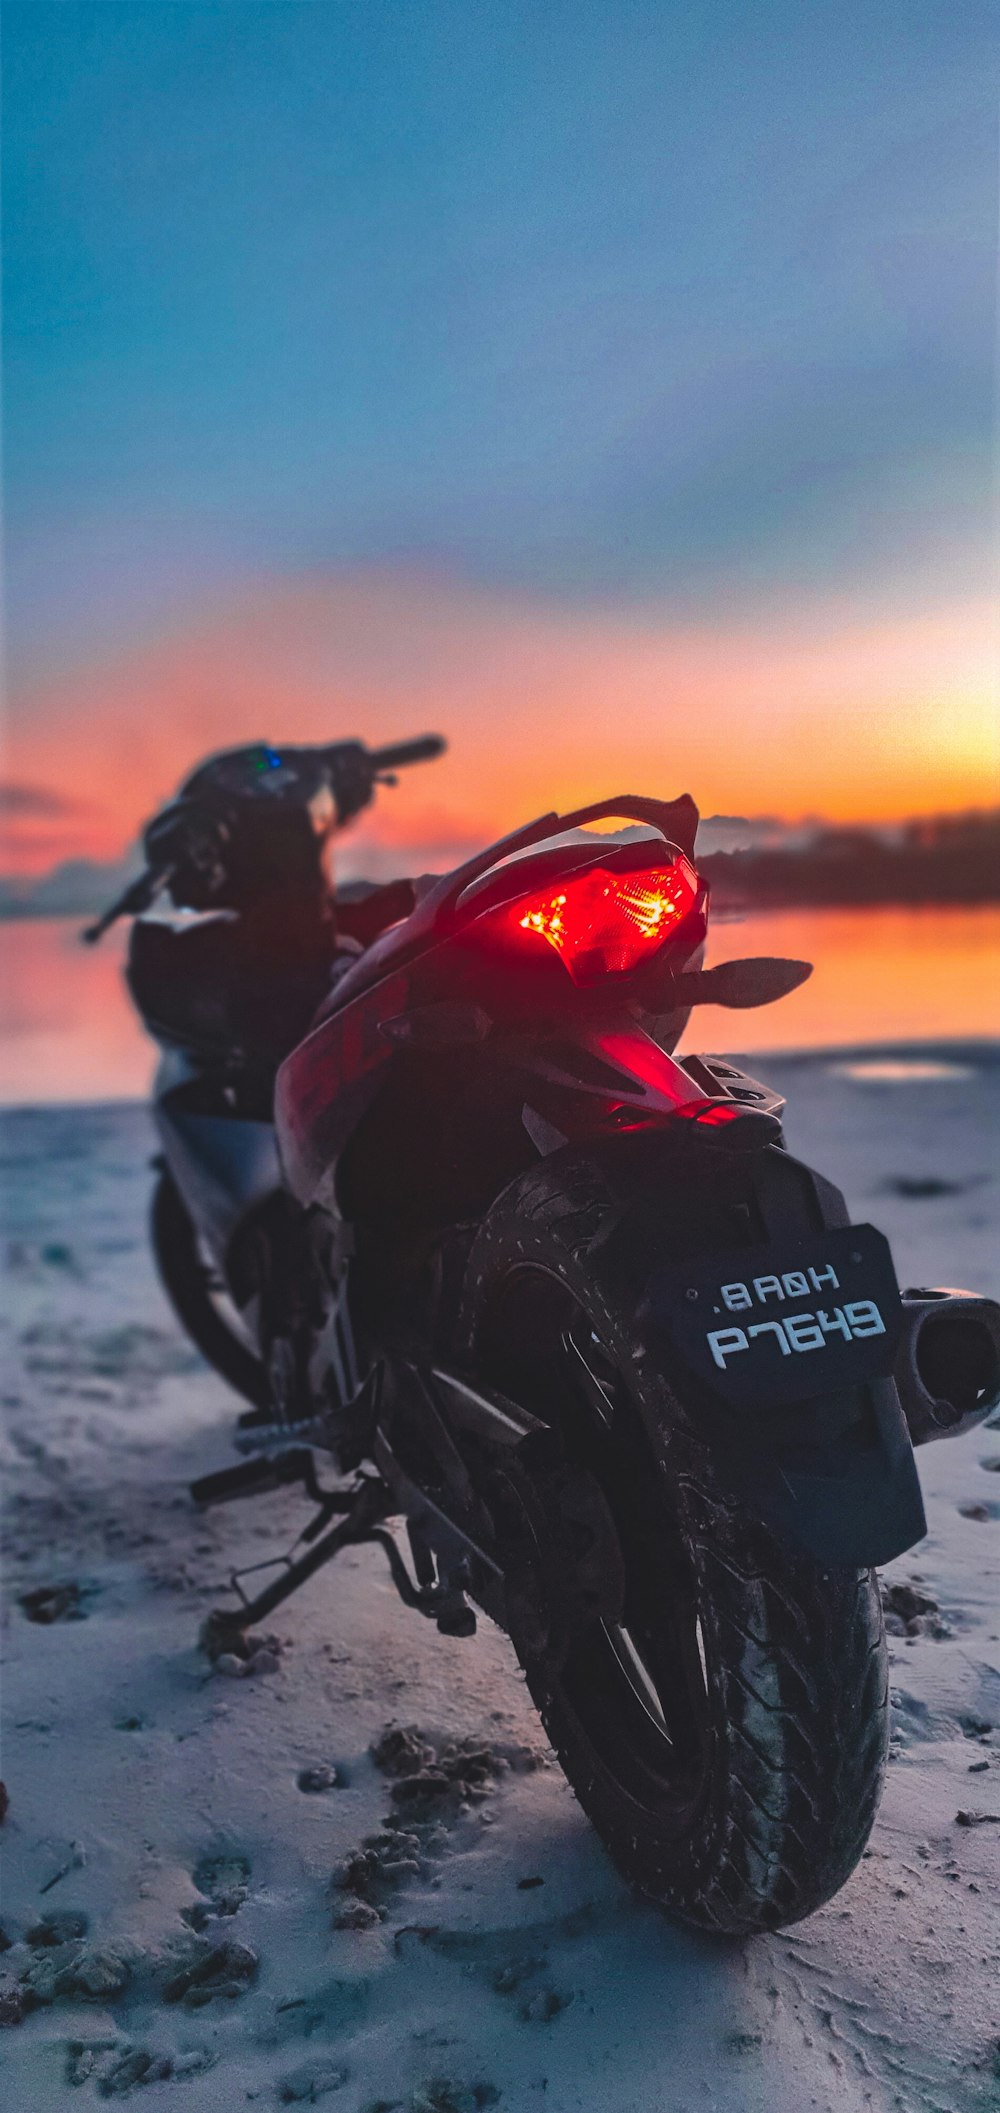 black and orange honda motorcycle photo – Free Vehicle Image on Unsplash